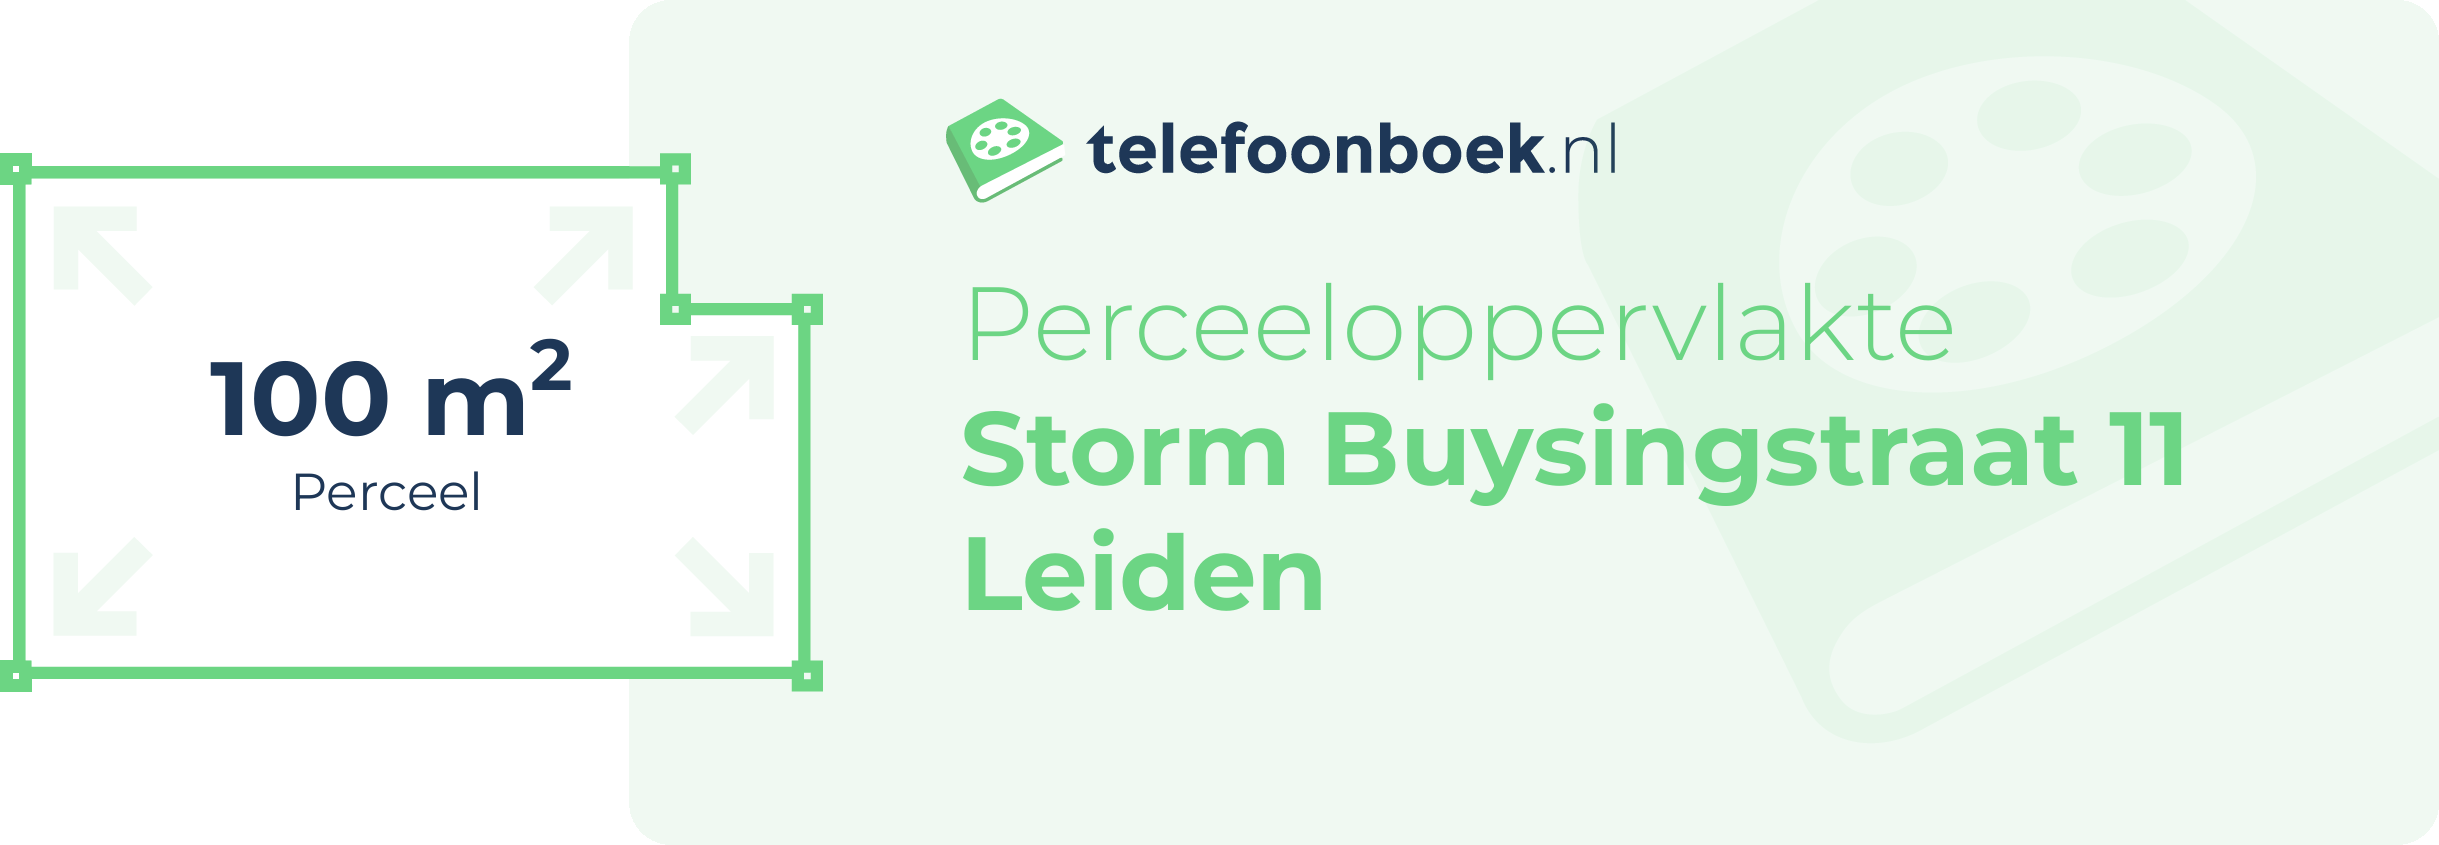 Perceeloppervlakte Storm Buysingstraat 11 Leiden